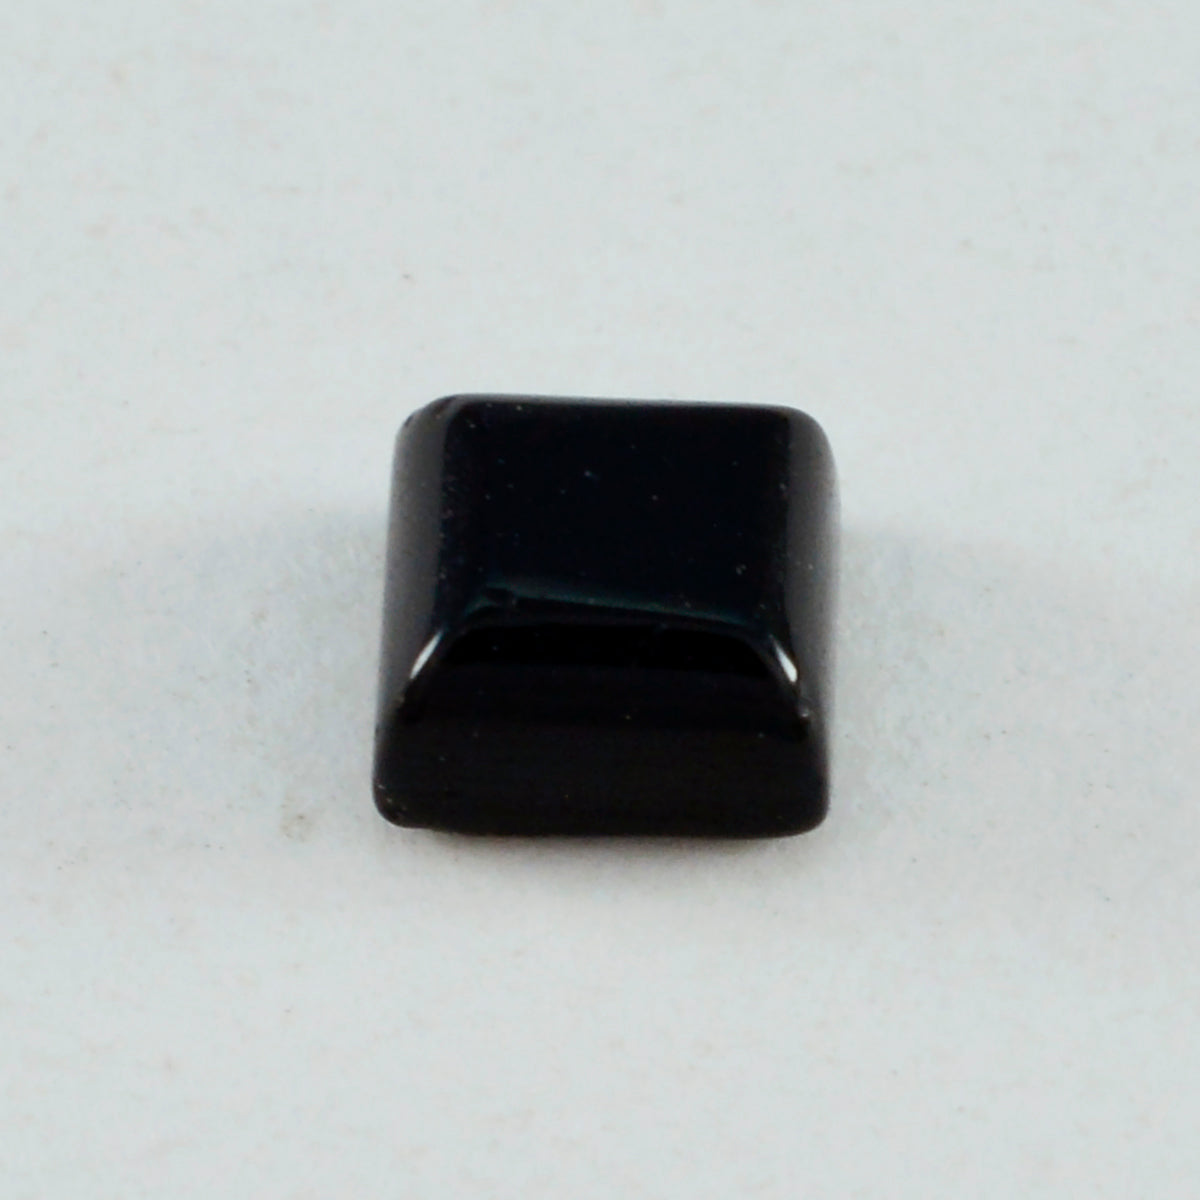 Riyogems 1 Stück schwarzer Onyx-Cabochon, 11 x 11 mm, quadratische Form, wunderbarer Qualitäts-Edelstein